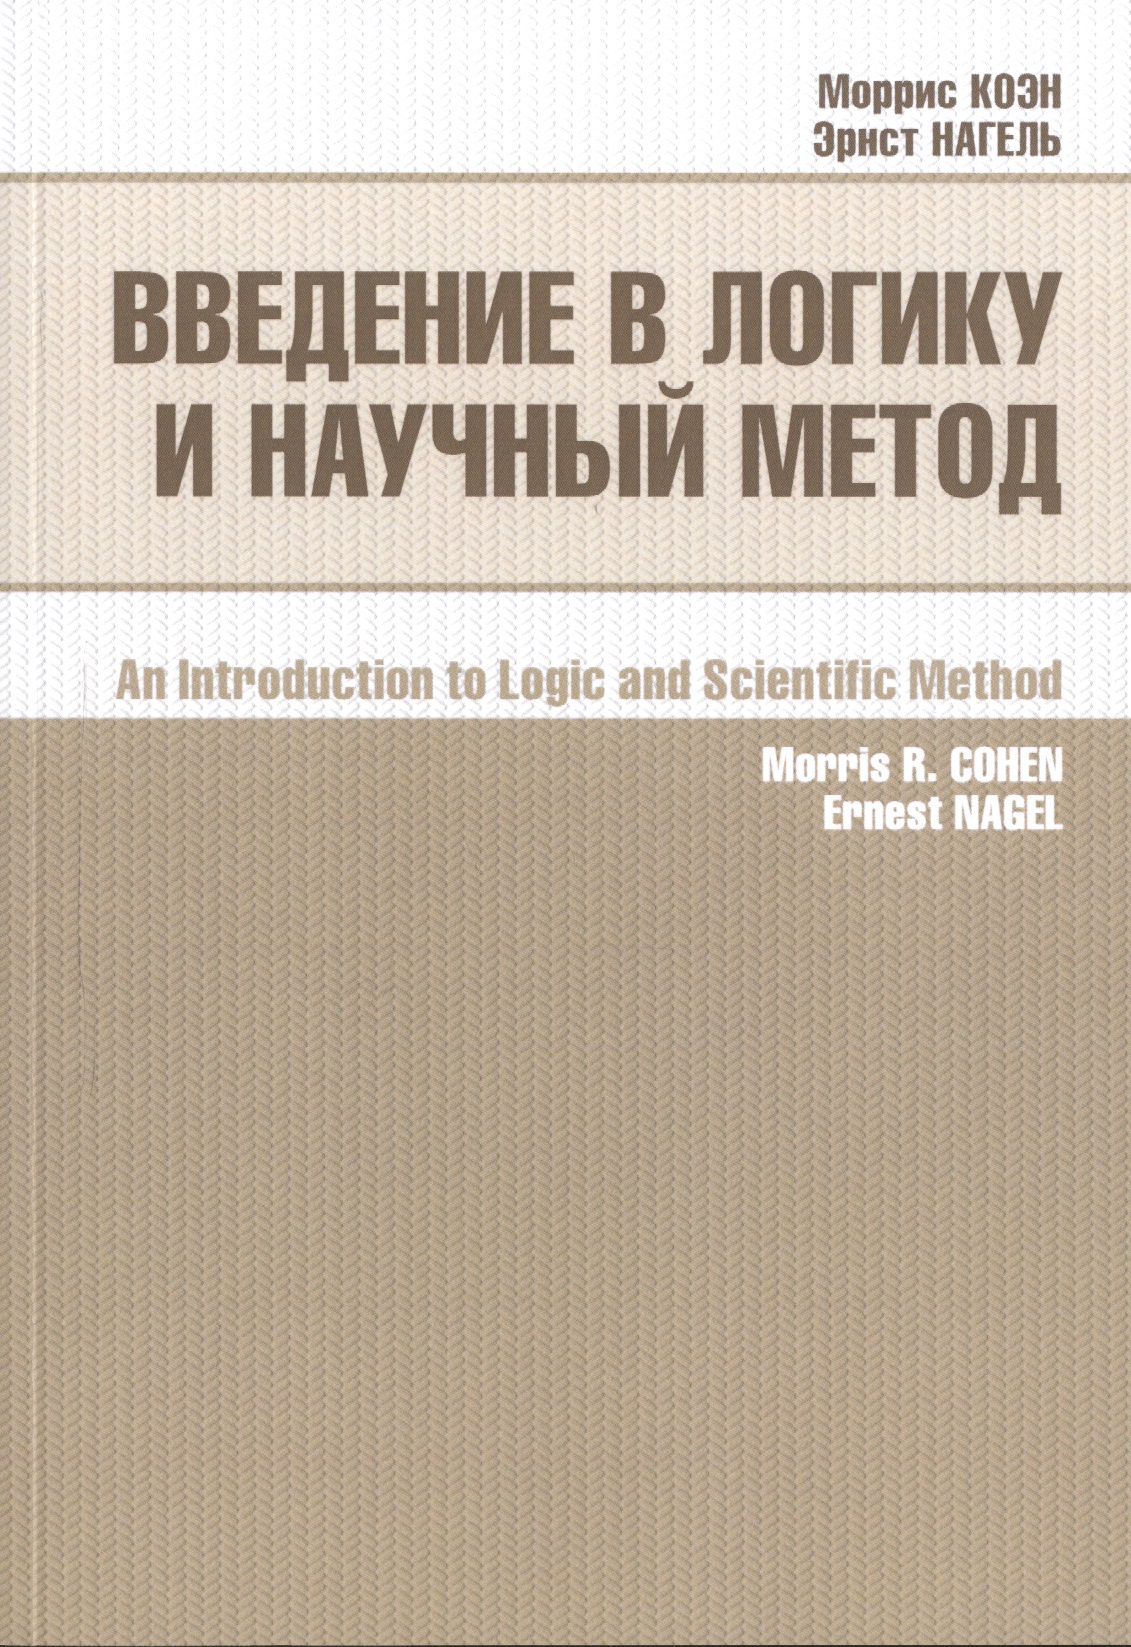 игнатьев м введение в метод орбит над конечным полем Введение в логику и научный метод (2 изд) (м) Коэн